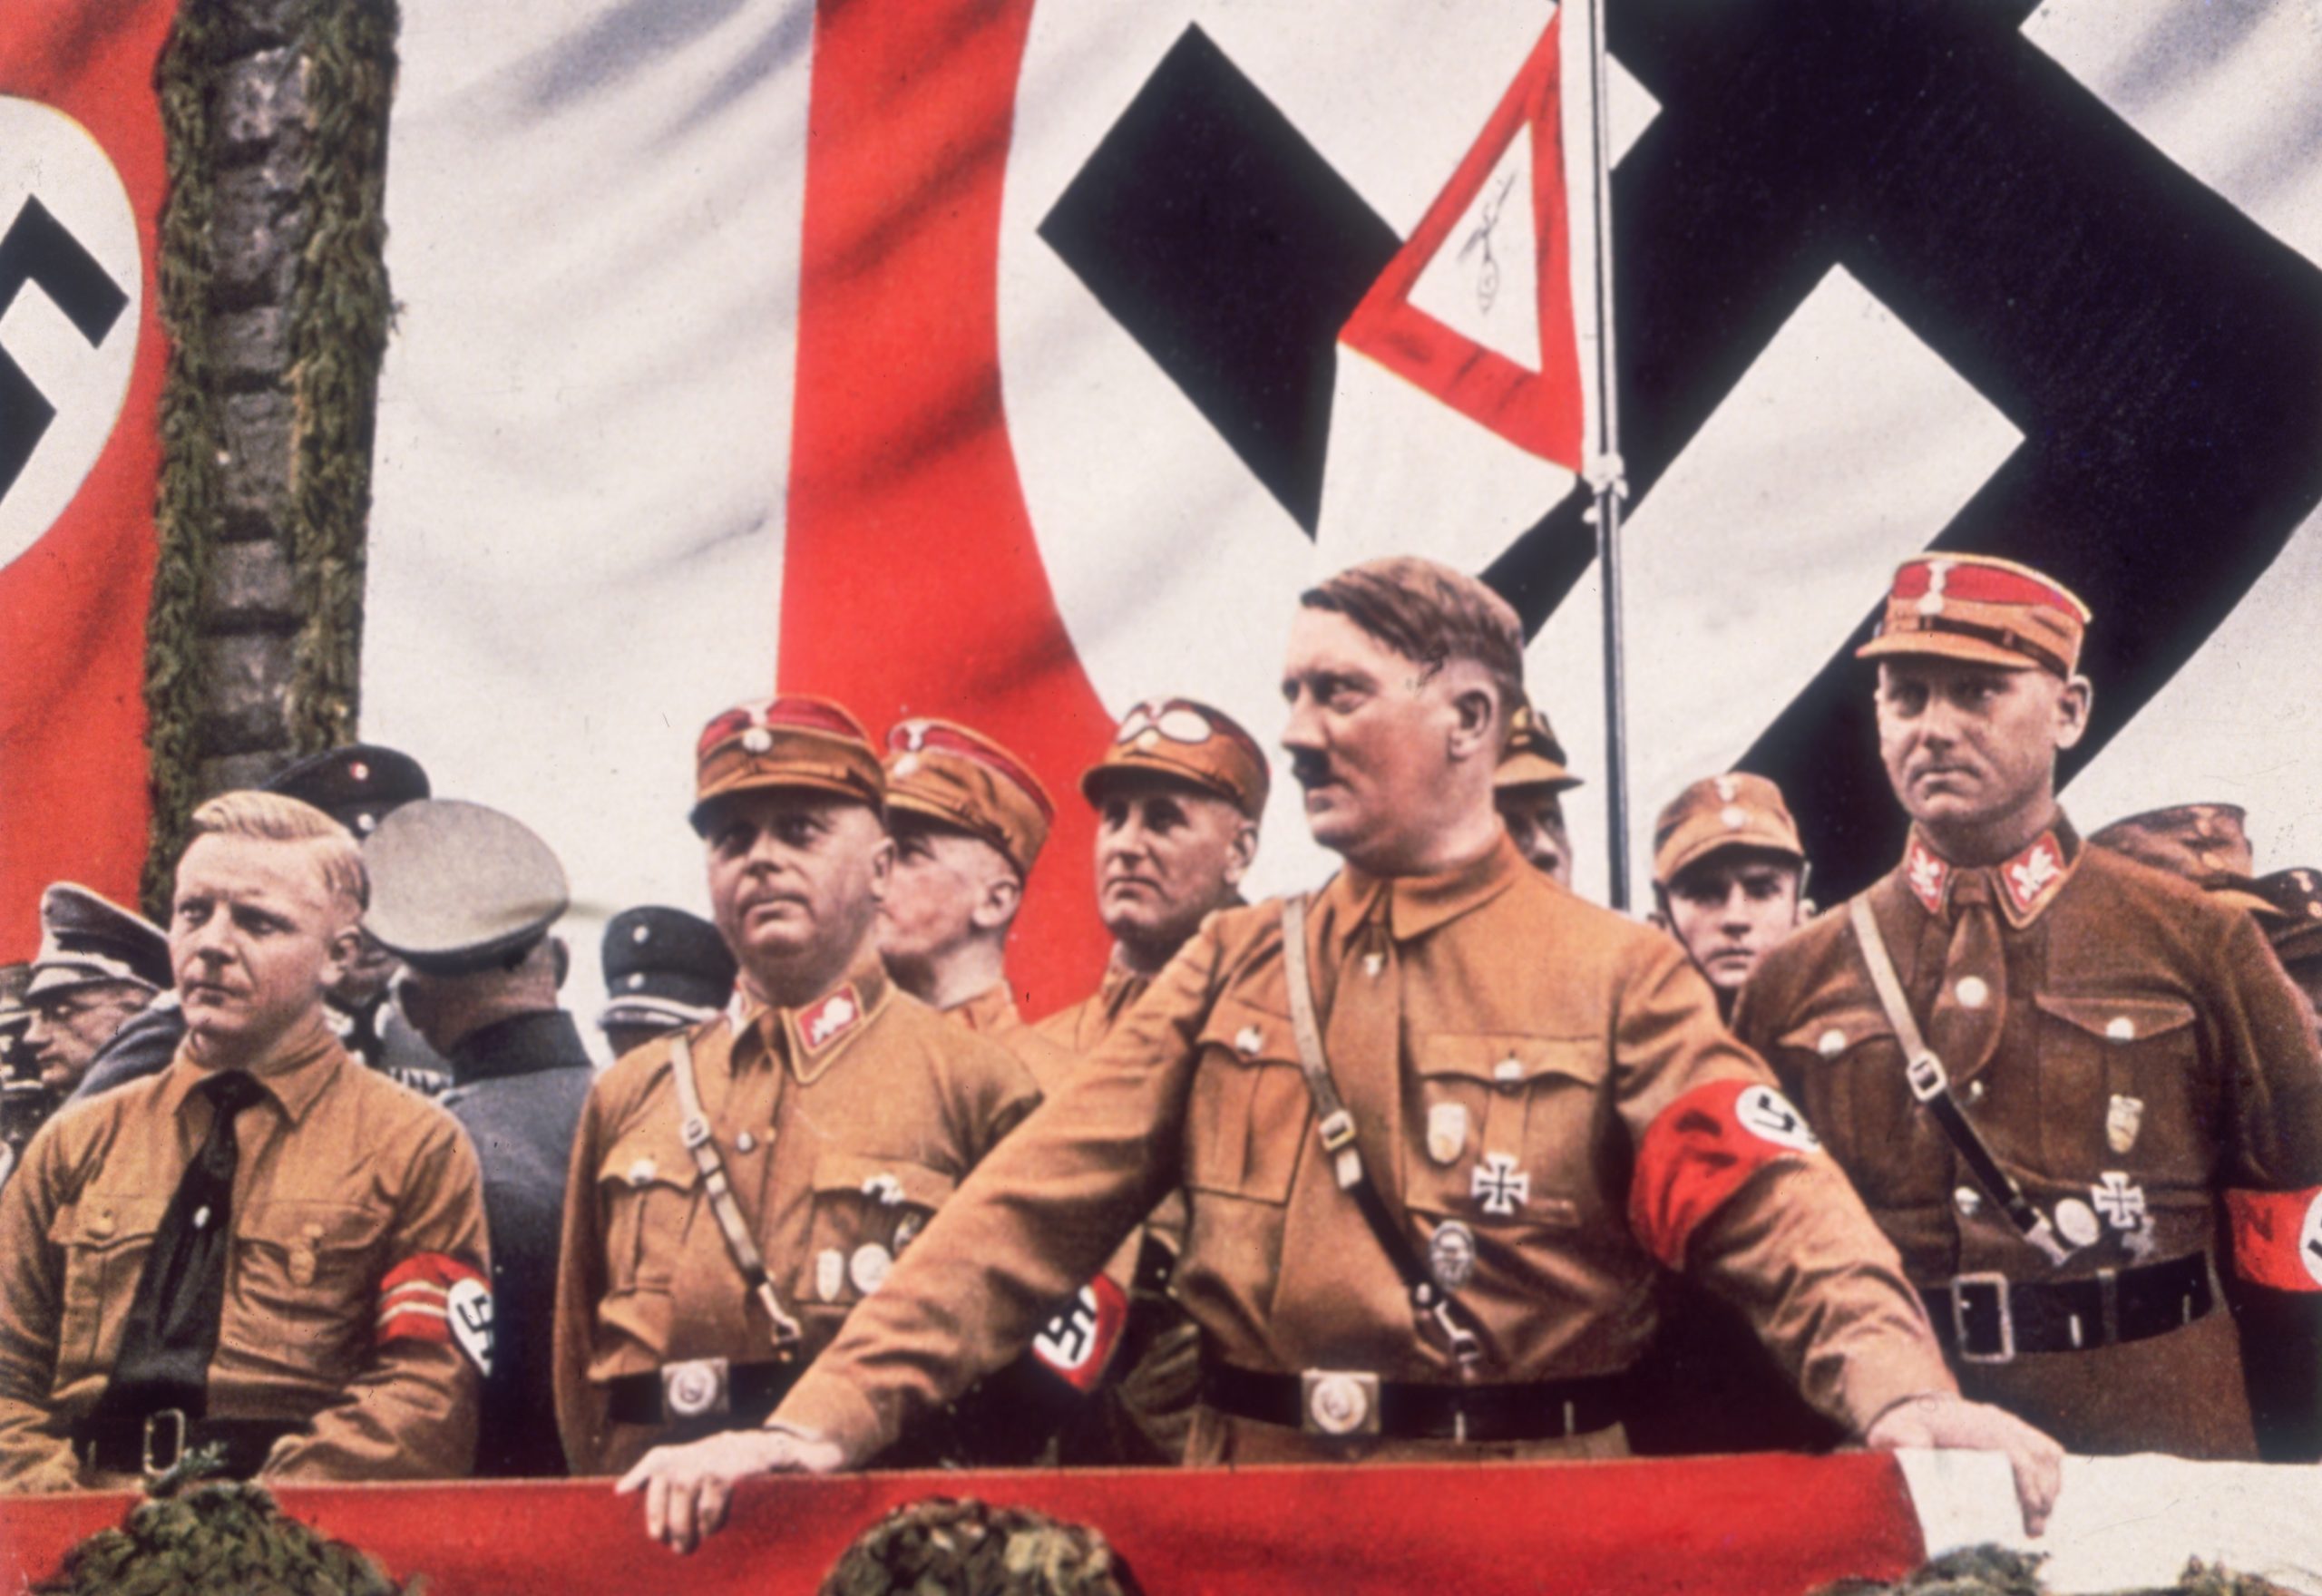 Adolf Hitler photo